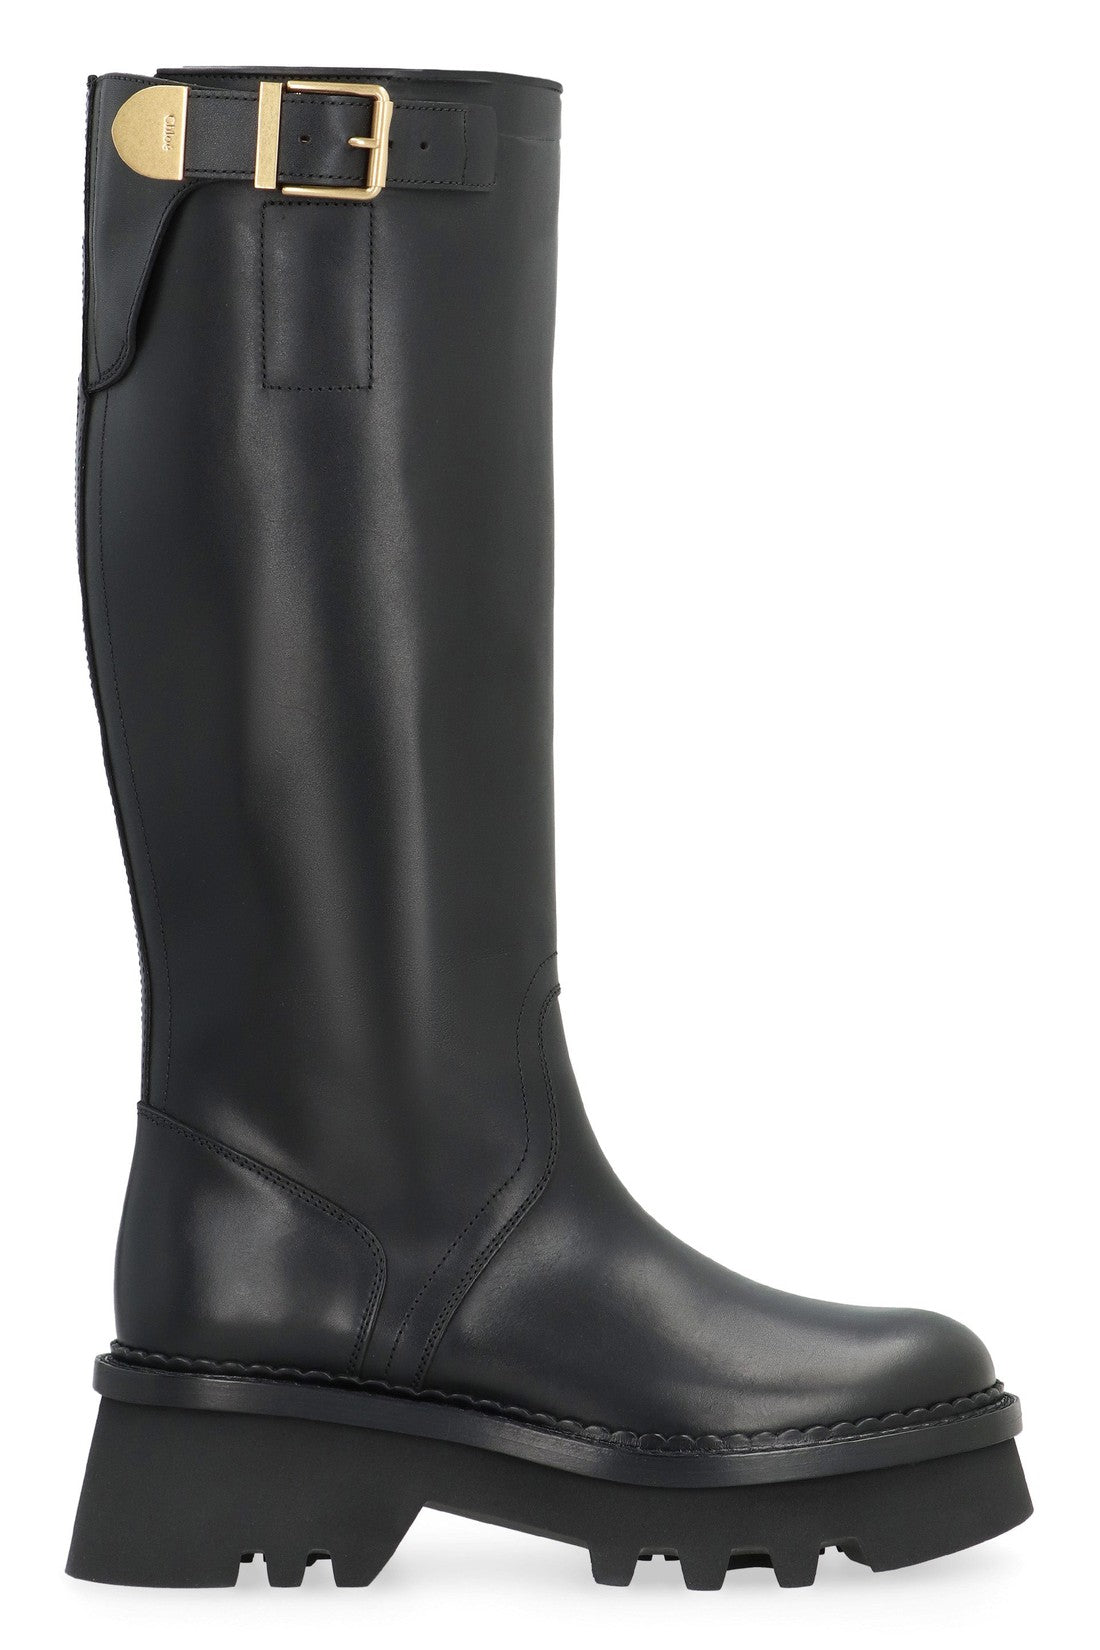 Chloé-OUTLET-SALE-Owena leather boots-ARCHIVIST